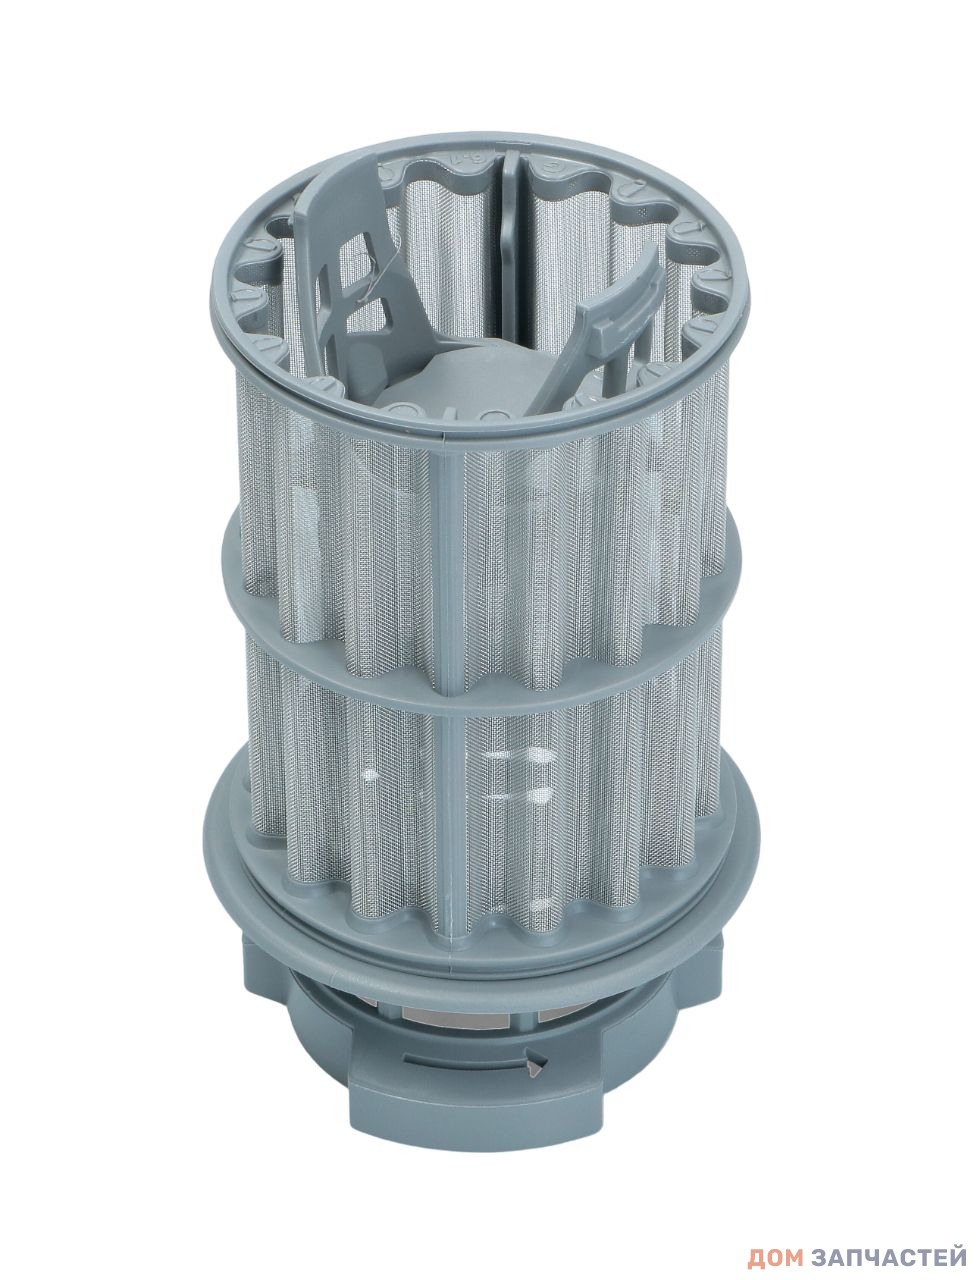 Фильтр для посудомоечной машины Bosch, Siemens